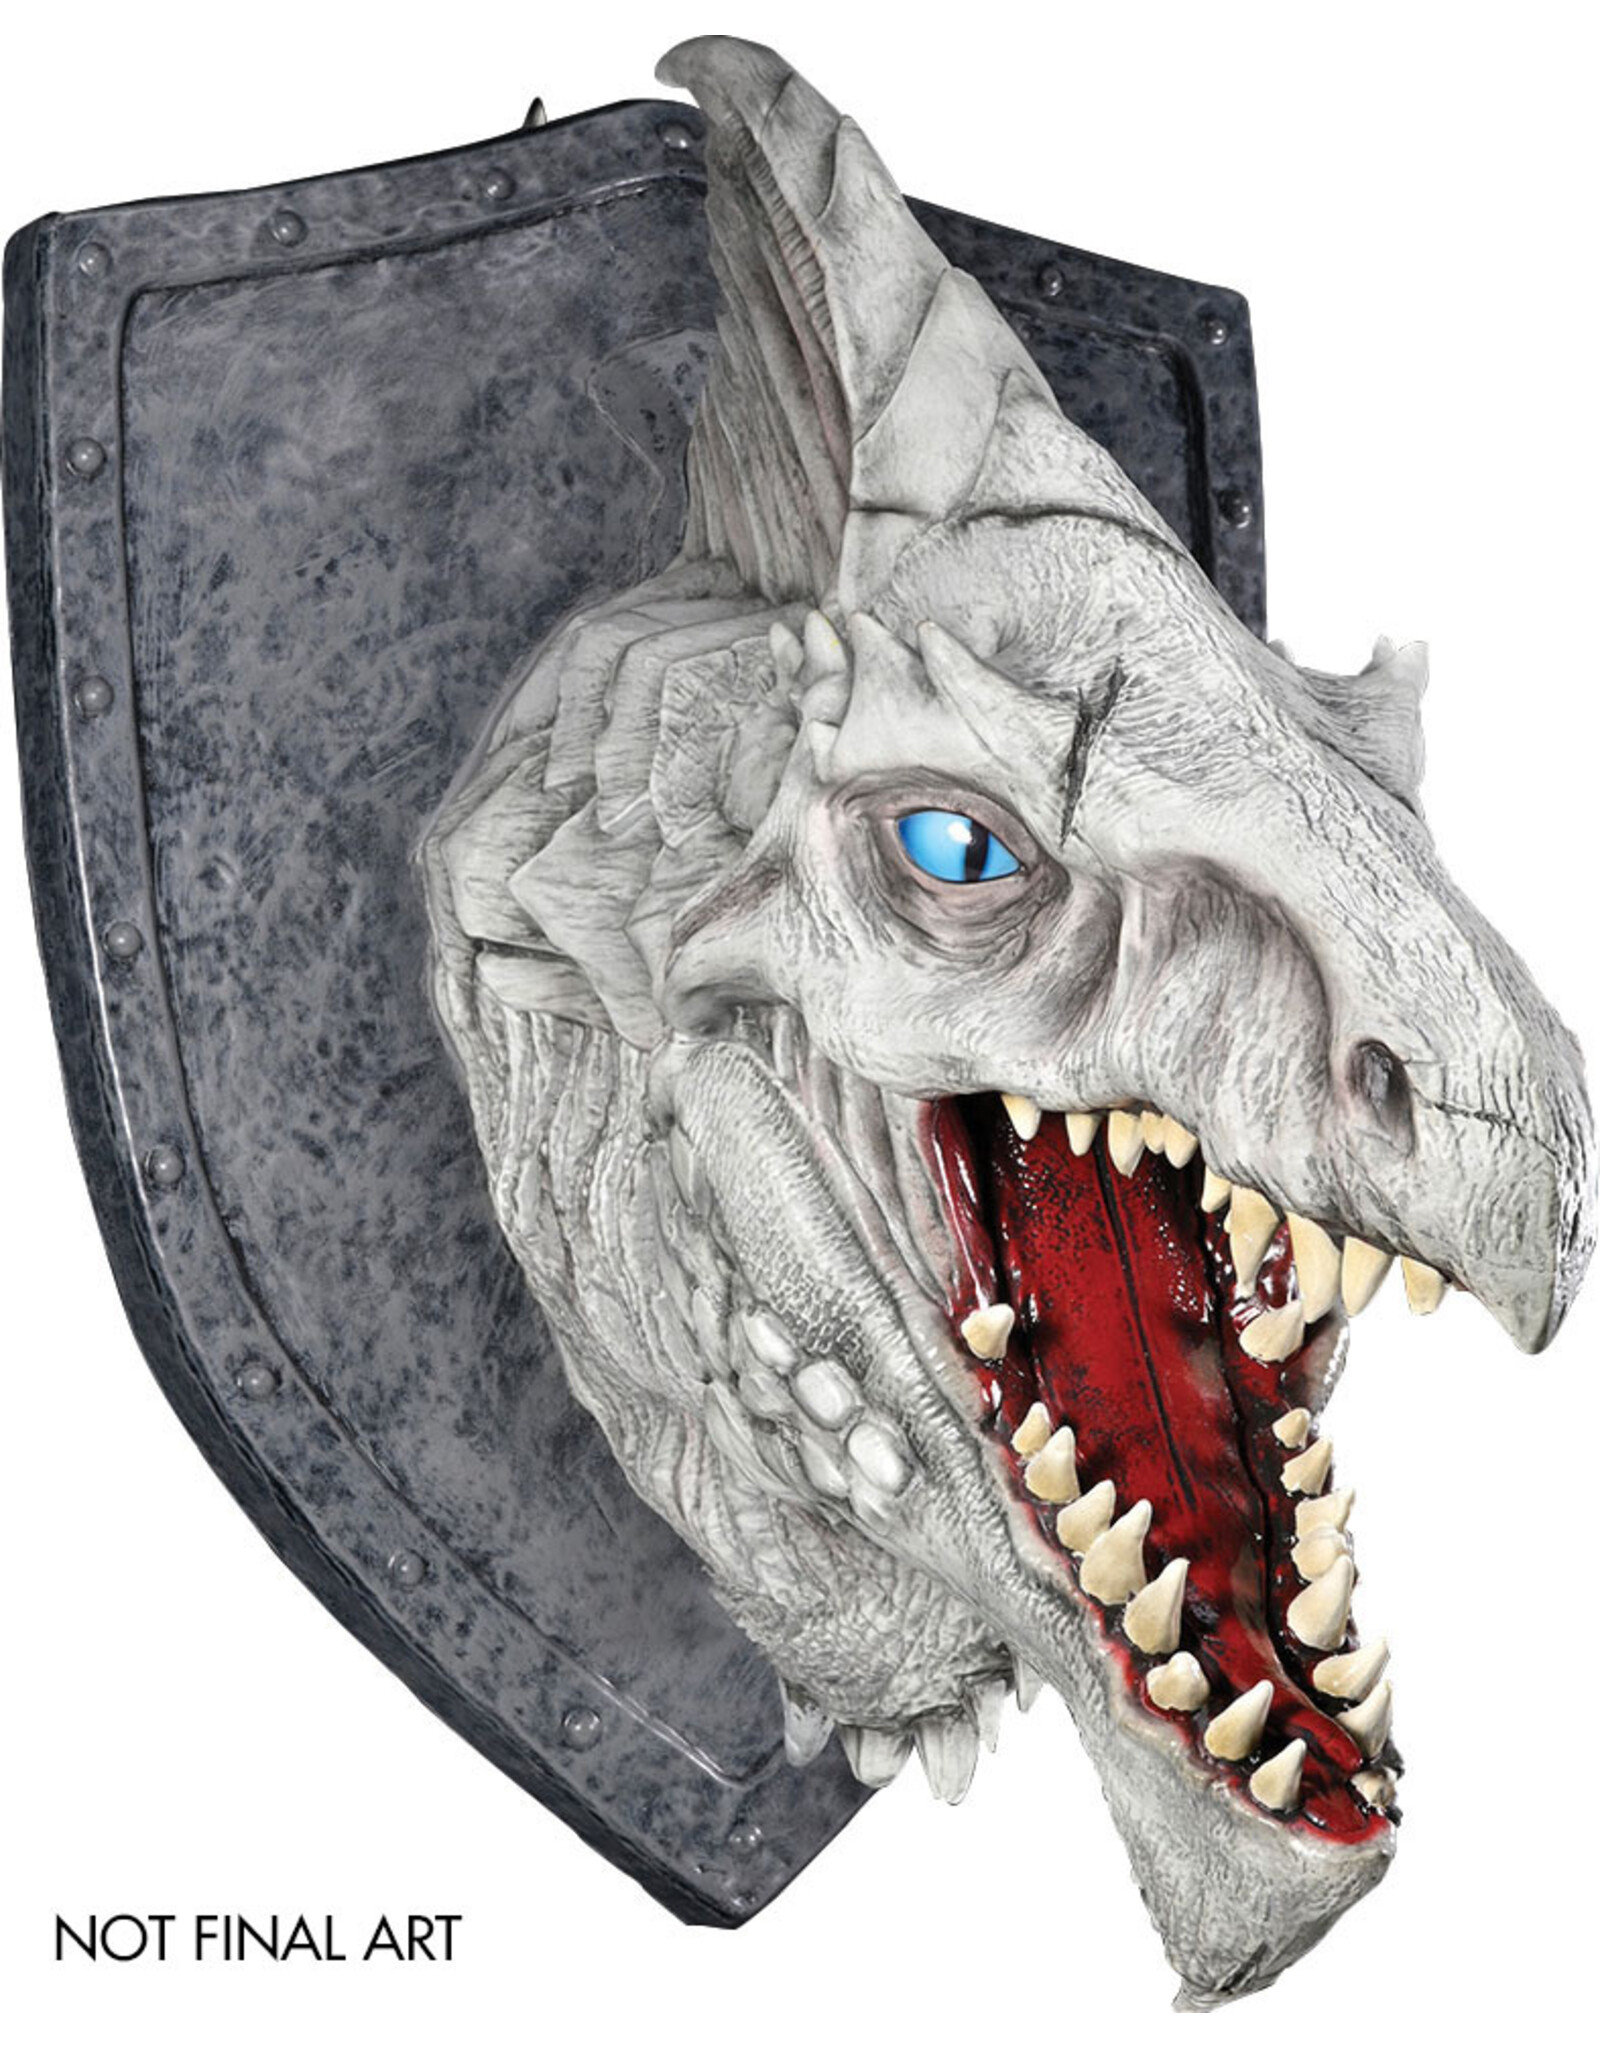 WizKids D&D: Replicas of the Realms - White Dragon Trophy Plaque